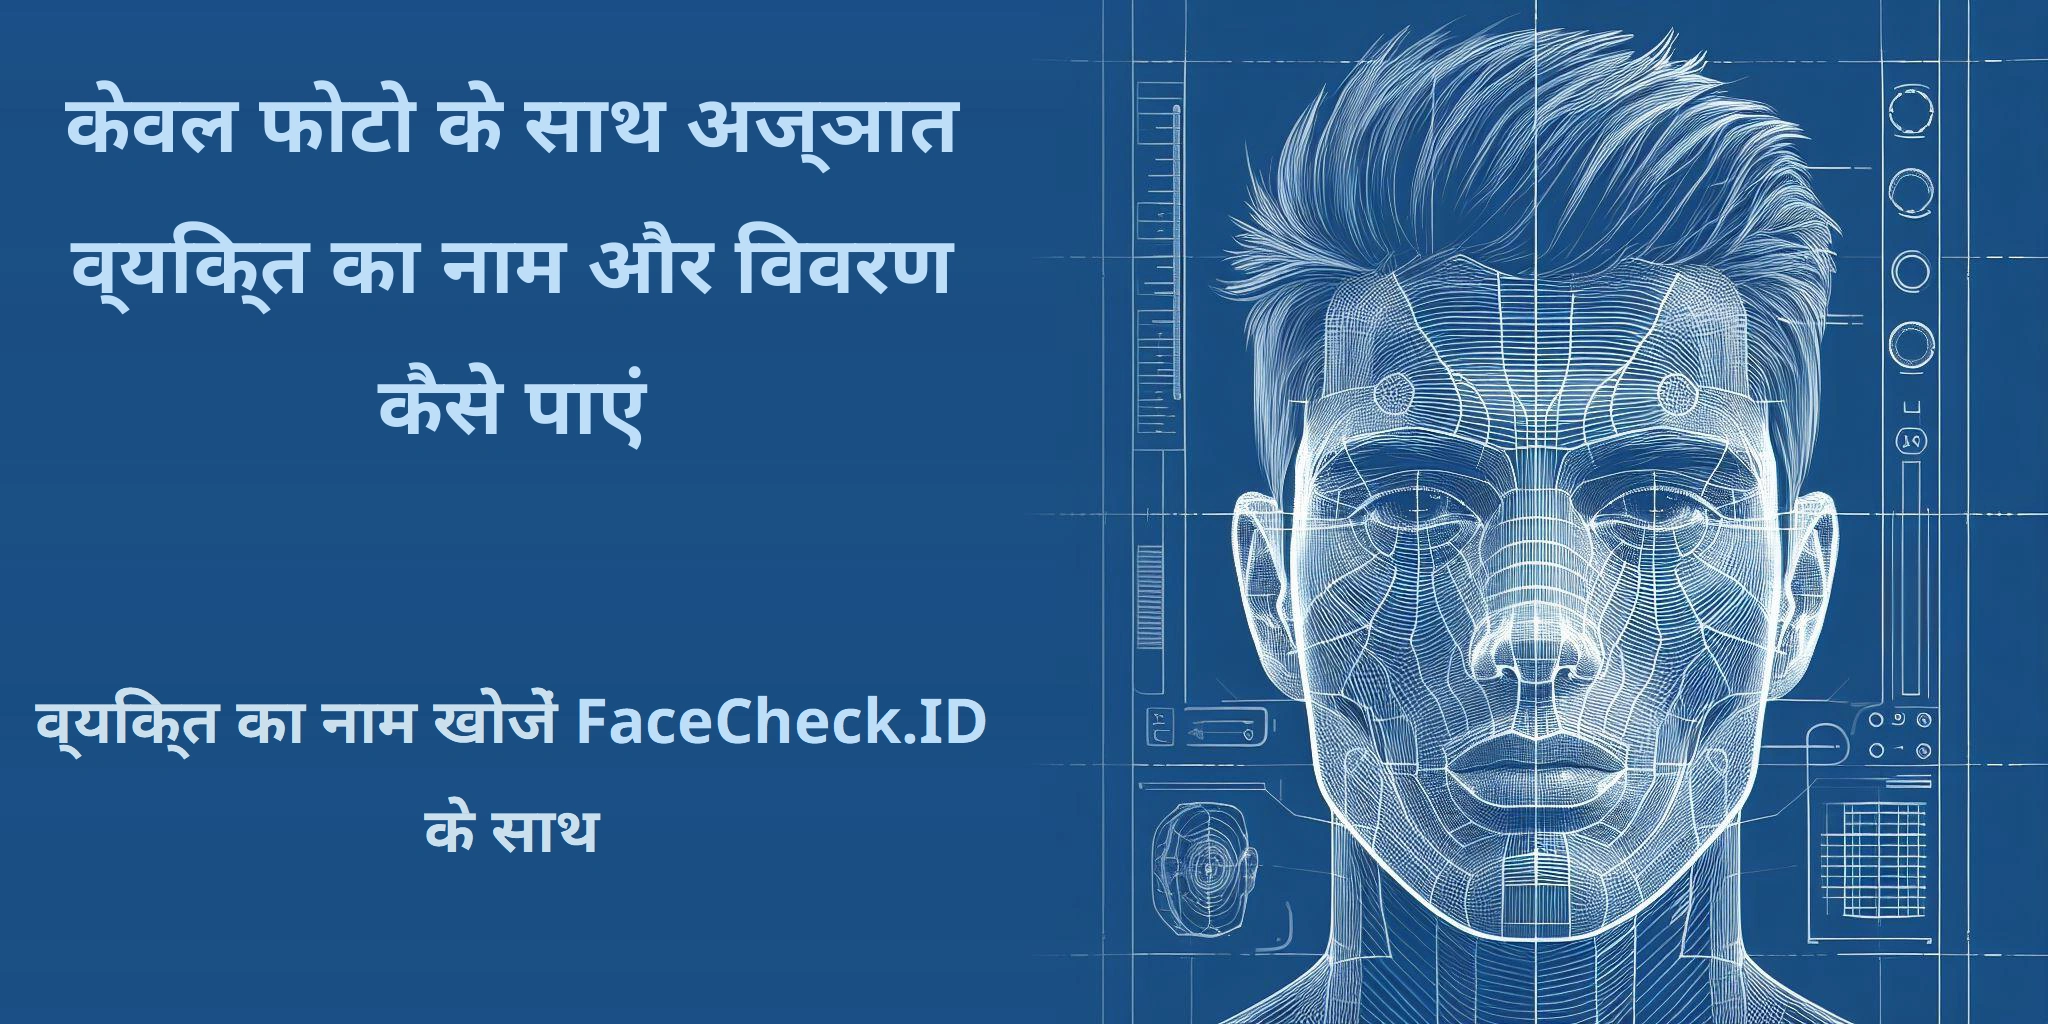 केवल फोटो के साथ अज्ञात व्यक्ति का नाम और विवरण कैसे पाएं व्यक्ति का नाम खोजें FaceCheck.ID के साथ